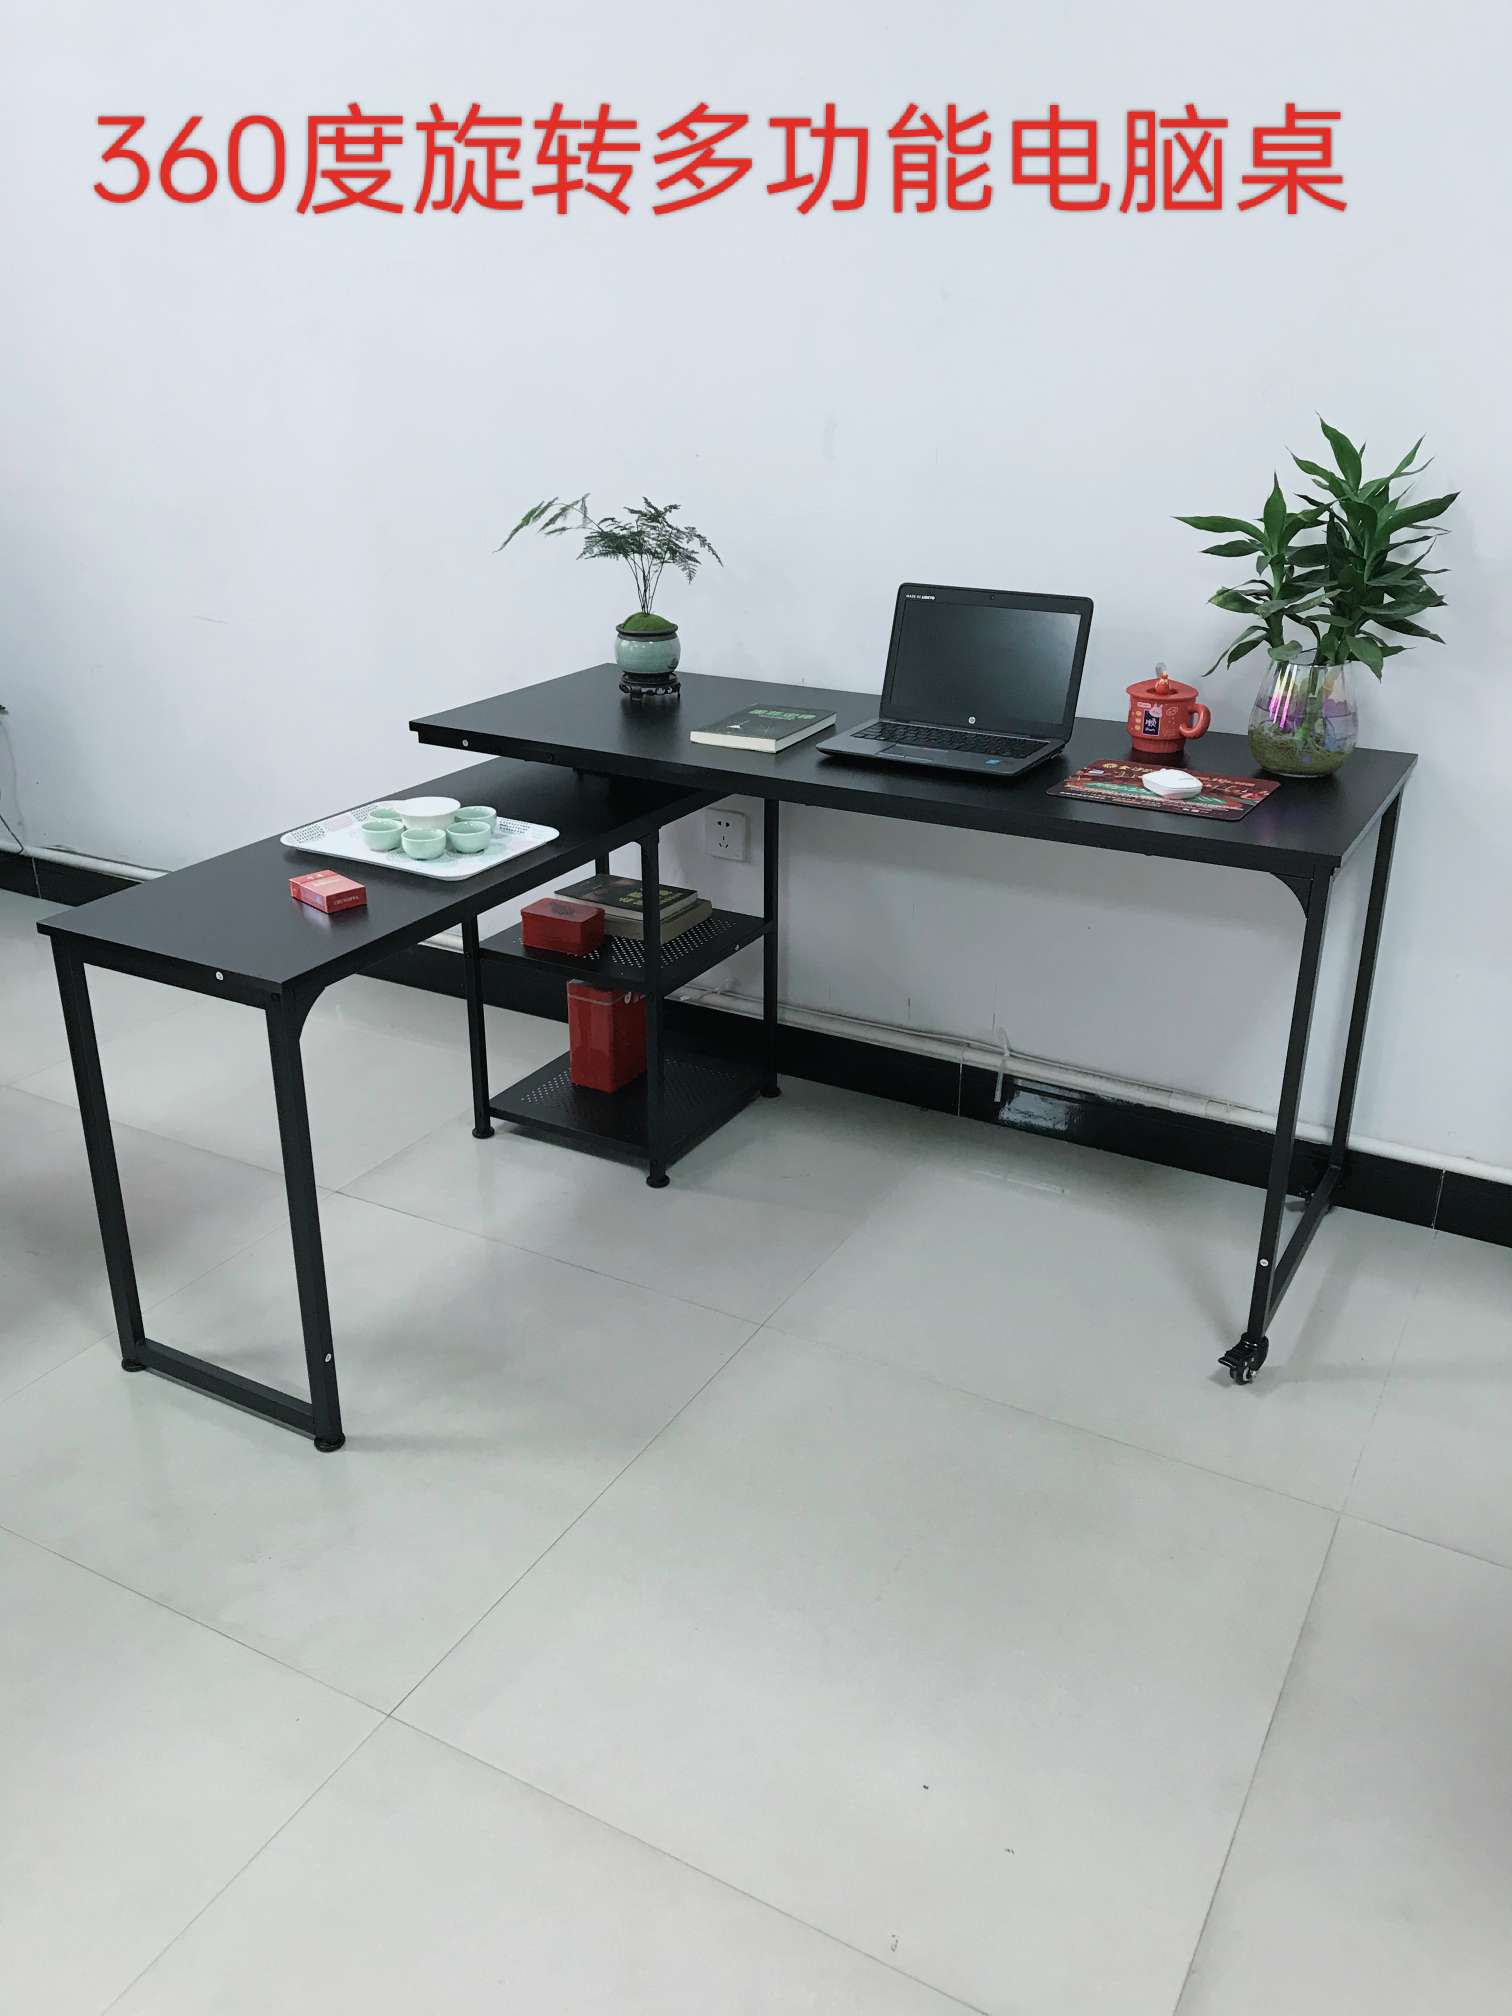 高效实用的办公桌文化办公环境必备品 电脑一体式办公桌